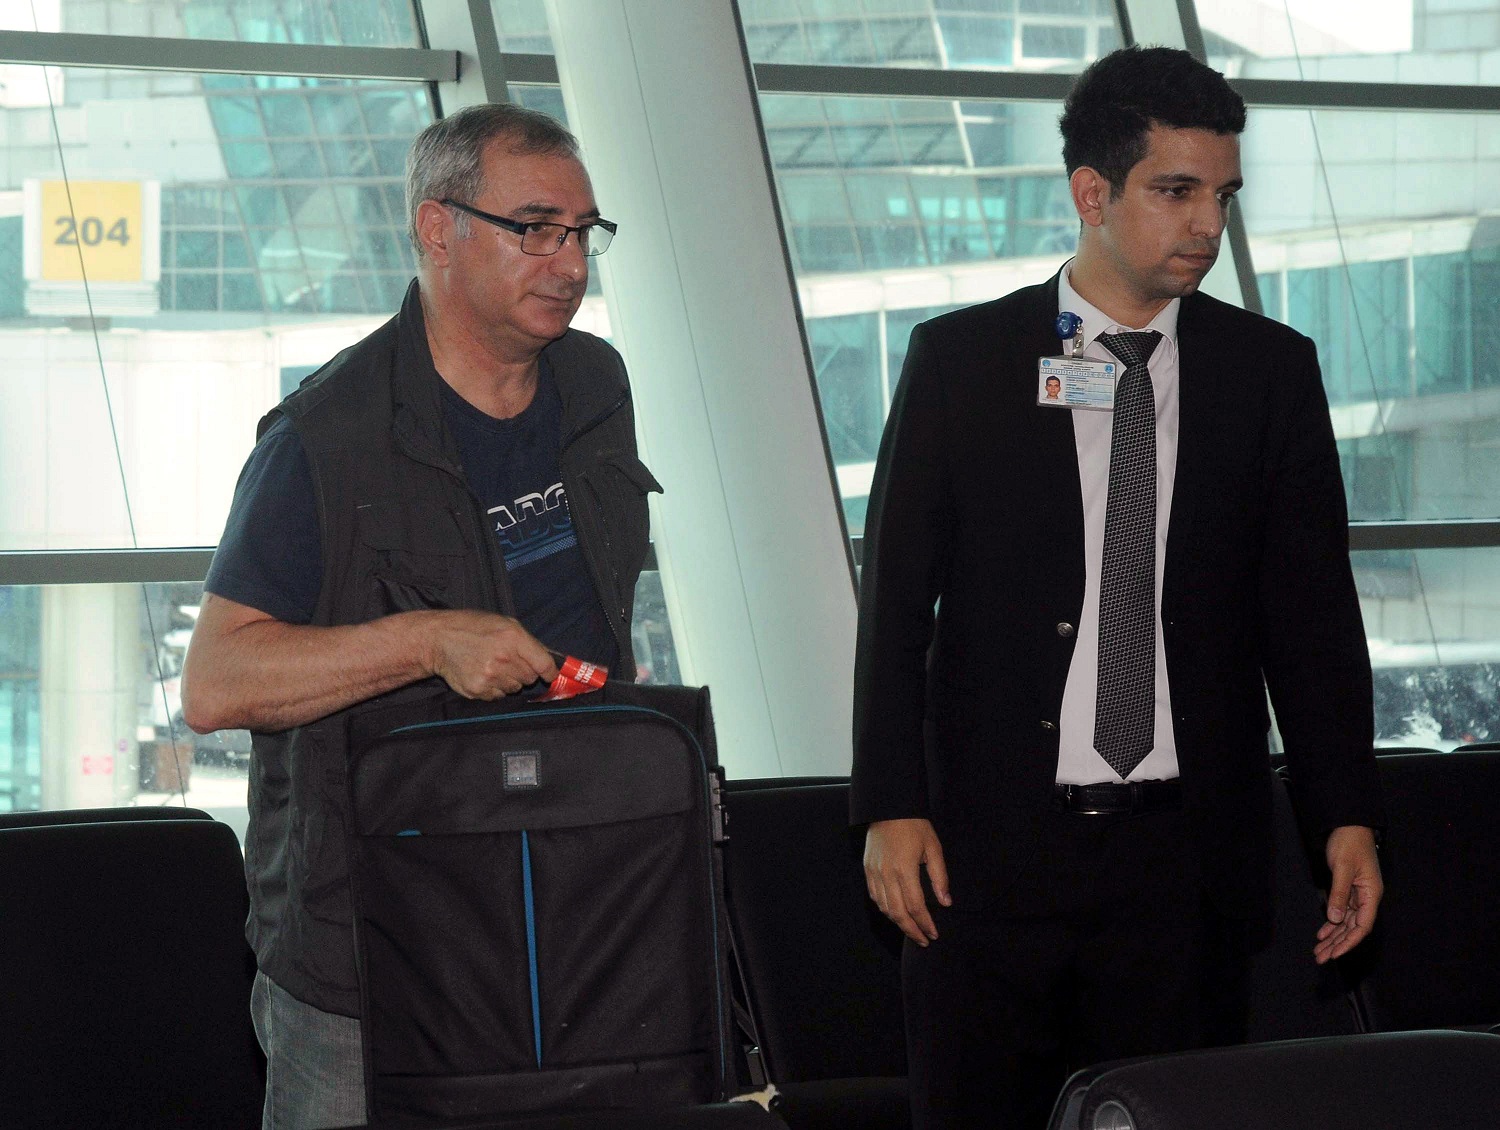 السفير الاسرائيلي لدى أنقرة يتعرض للتفتيش في مطار اسطنبول خلال مغادرته تركيا